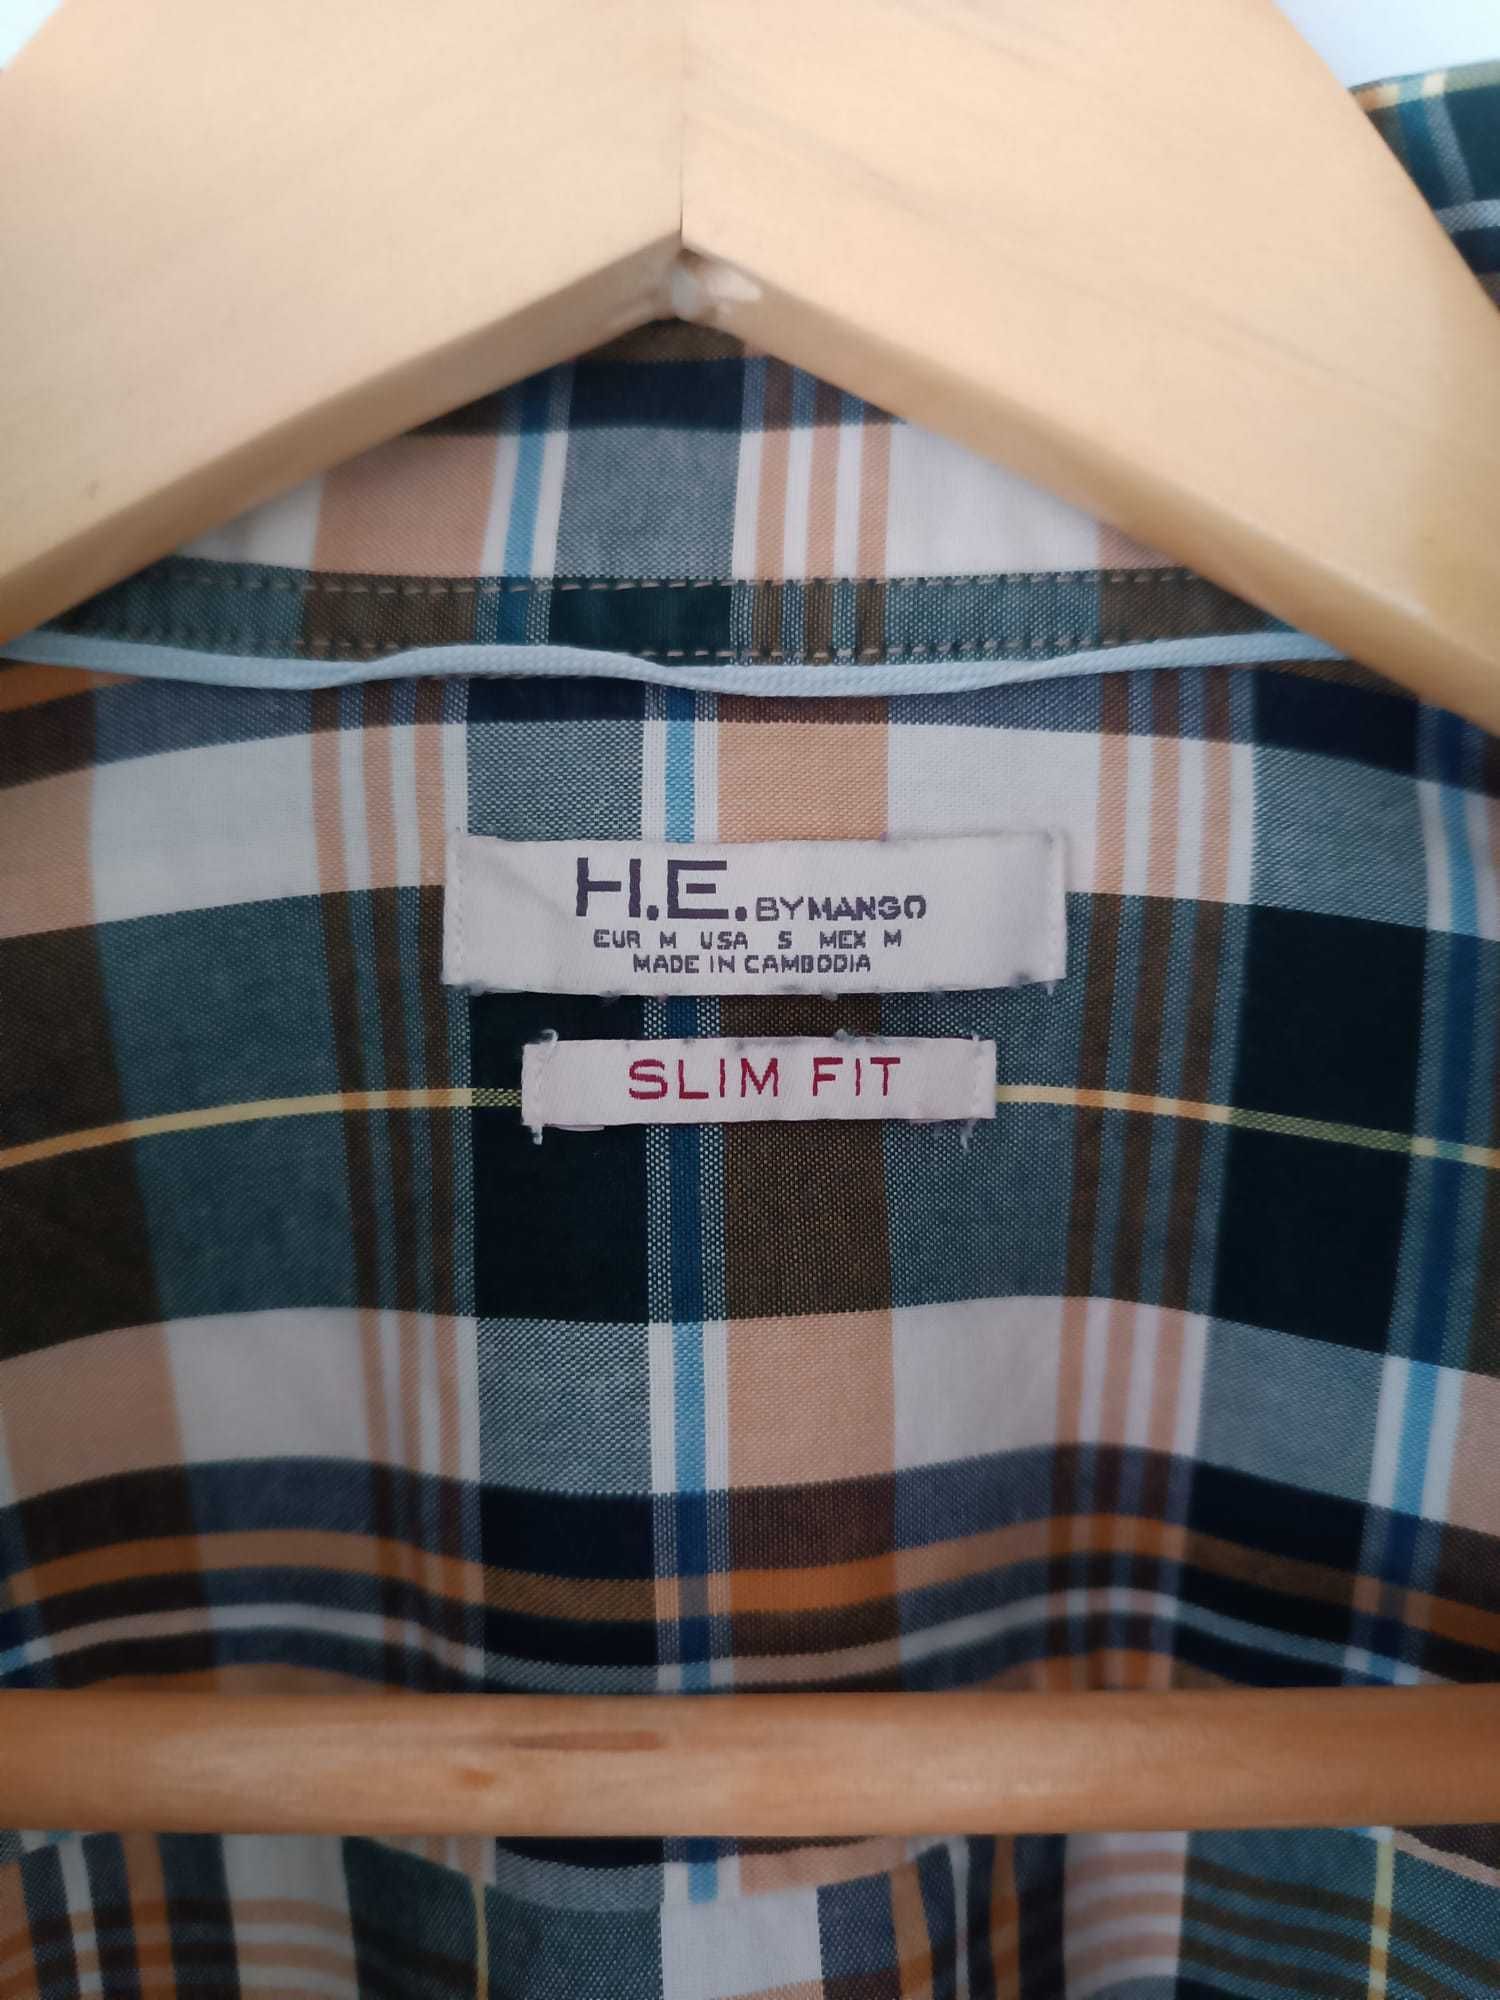 2 Camisas de Homem (tamanho M, H.E. by Mango)